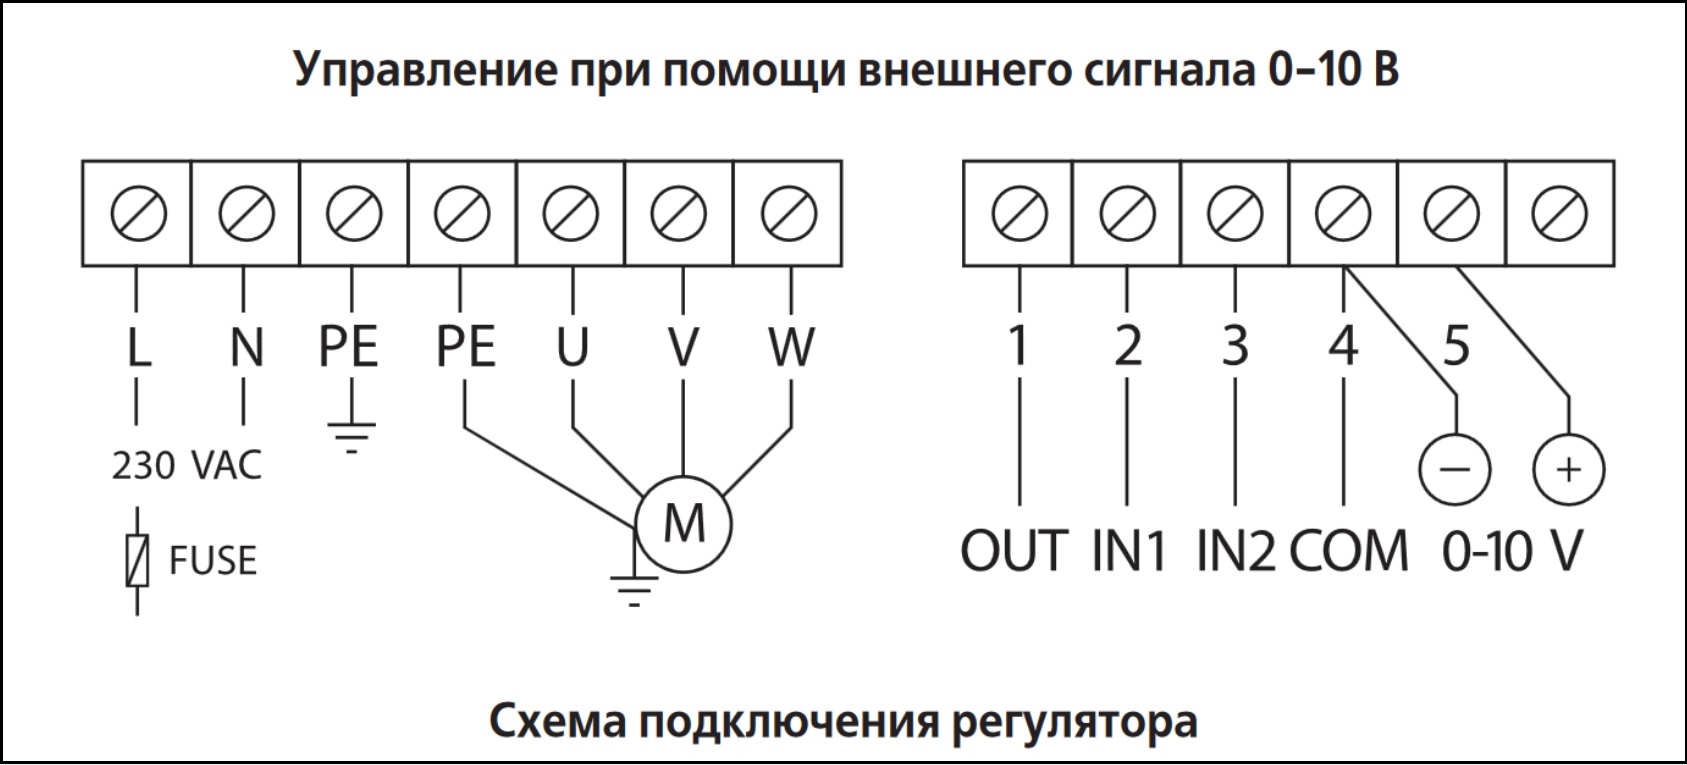 Схема подключения регулятора скорости ВЕНТС ВФЕД-200-ТА